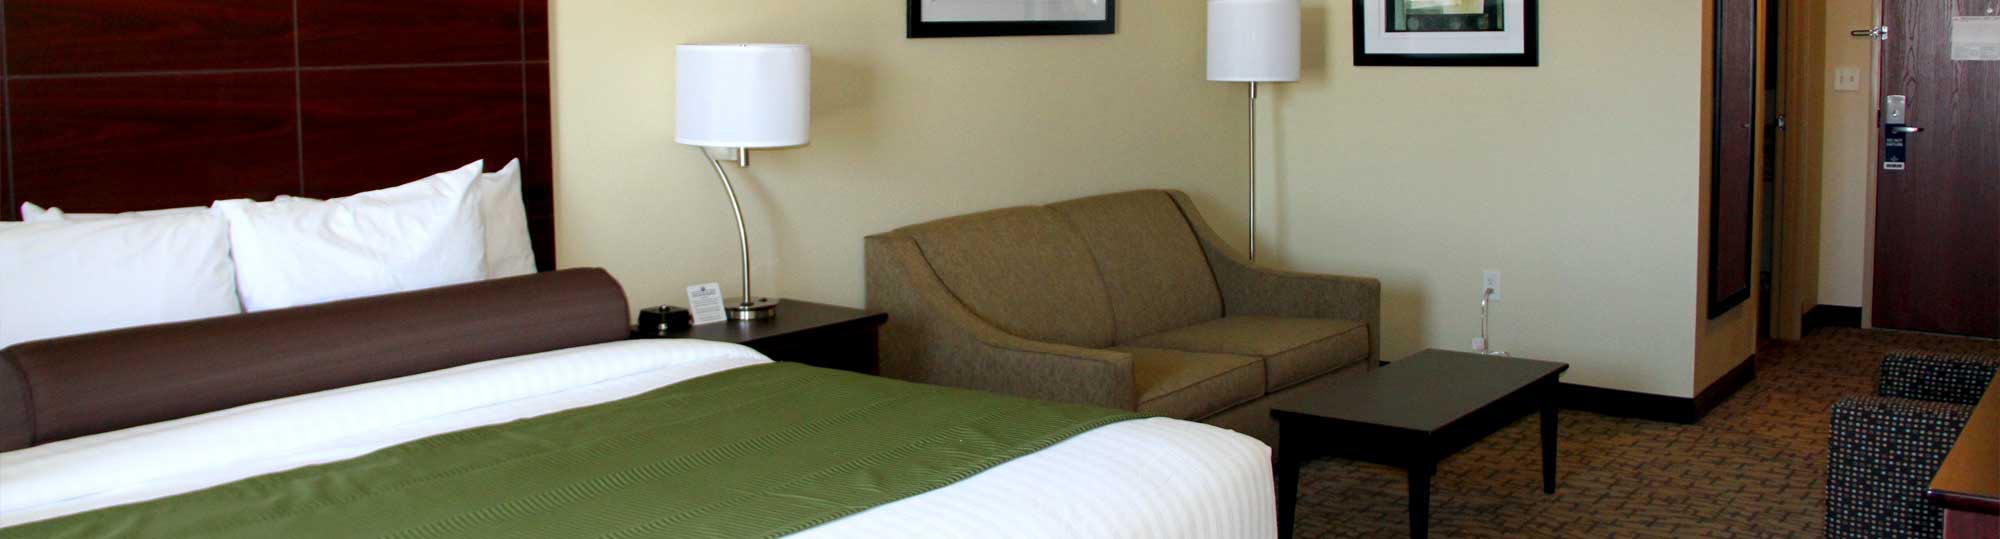 Cobblestone Hotel & Suites Devils Lake